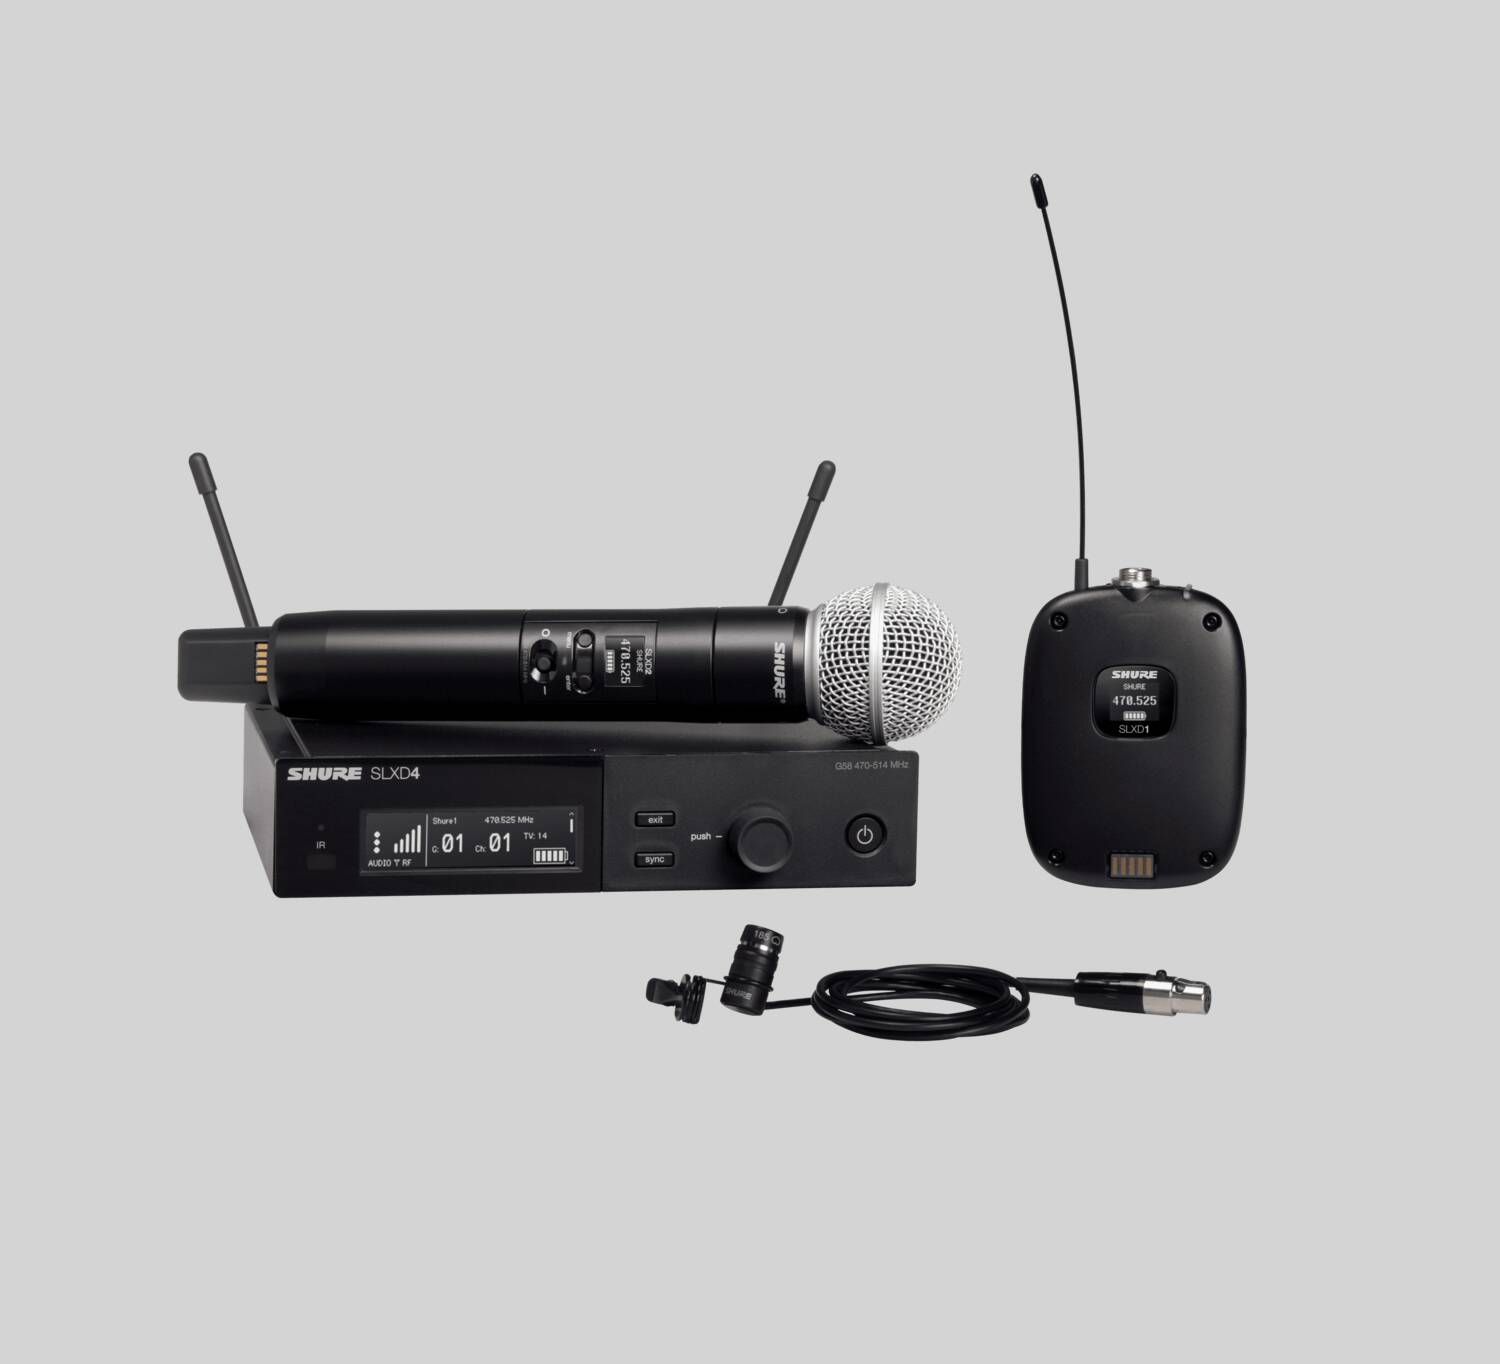 Shure general Shure slxd124/85 sistema inalámbrico con transmisor de mano slxd2/58 con micrófono lavalier wl185